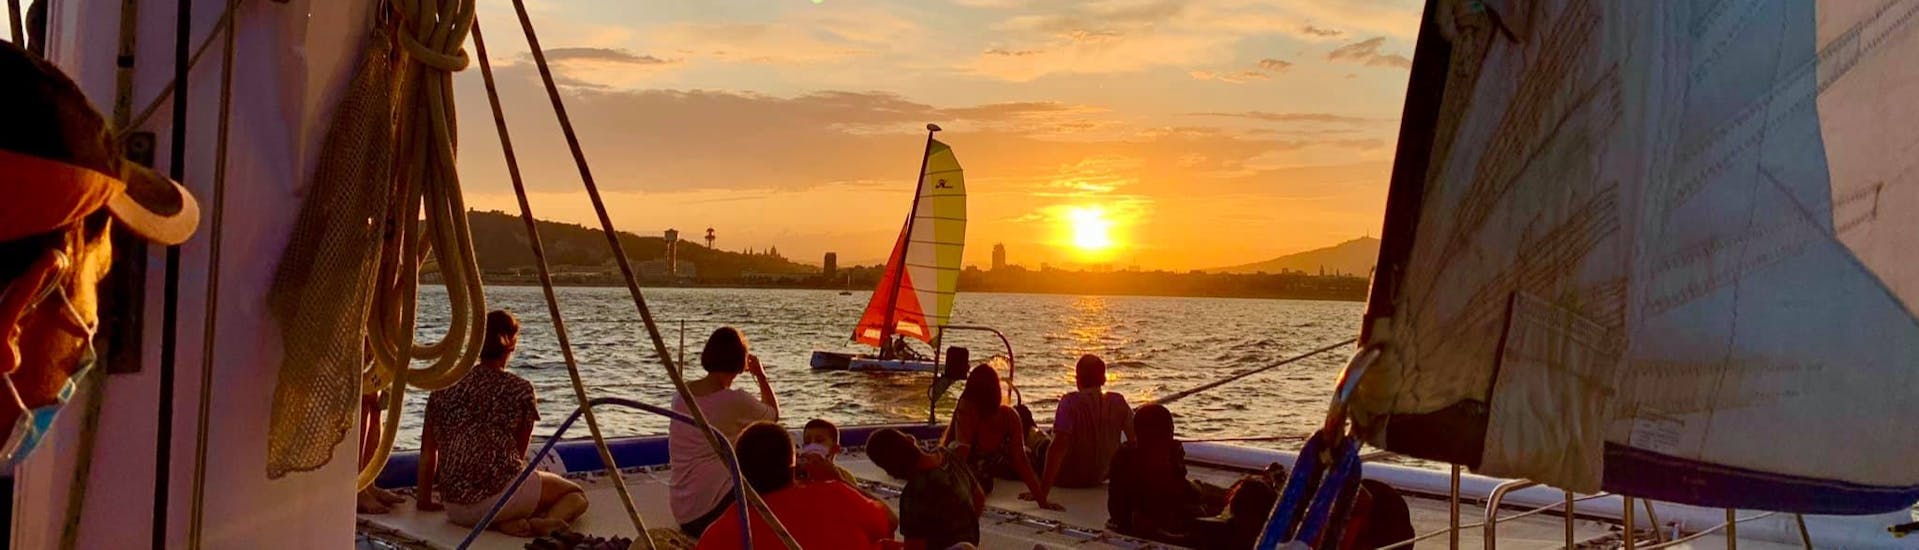 Un groupe profitant du coucher de soleil à bord de notre bateau lors d'une Balade en catamaran autour de Barcelone au coucher du soleil avec Catamaran Orsom Barcelona.